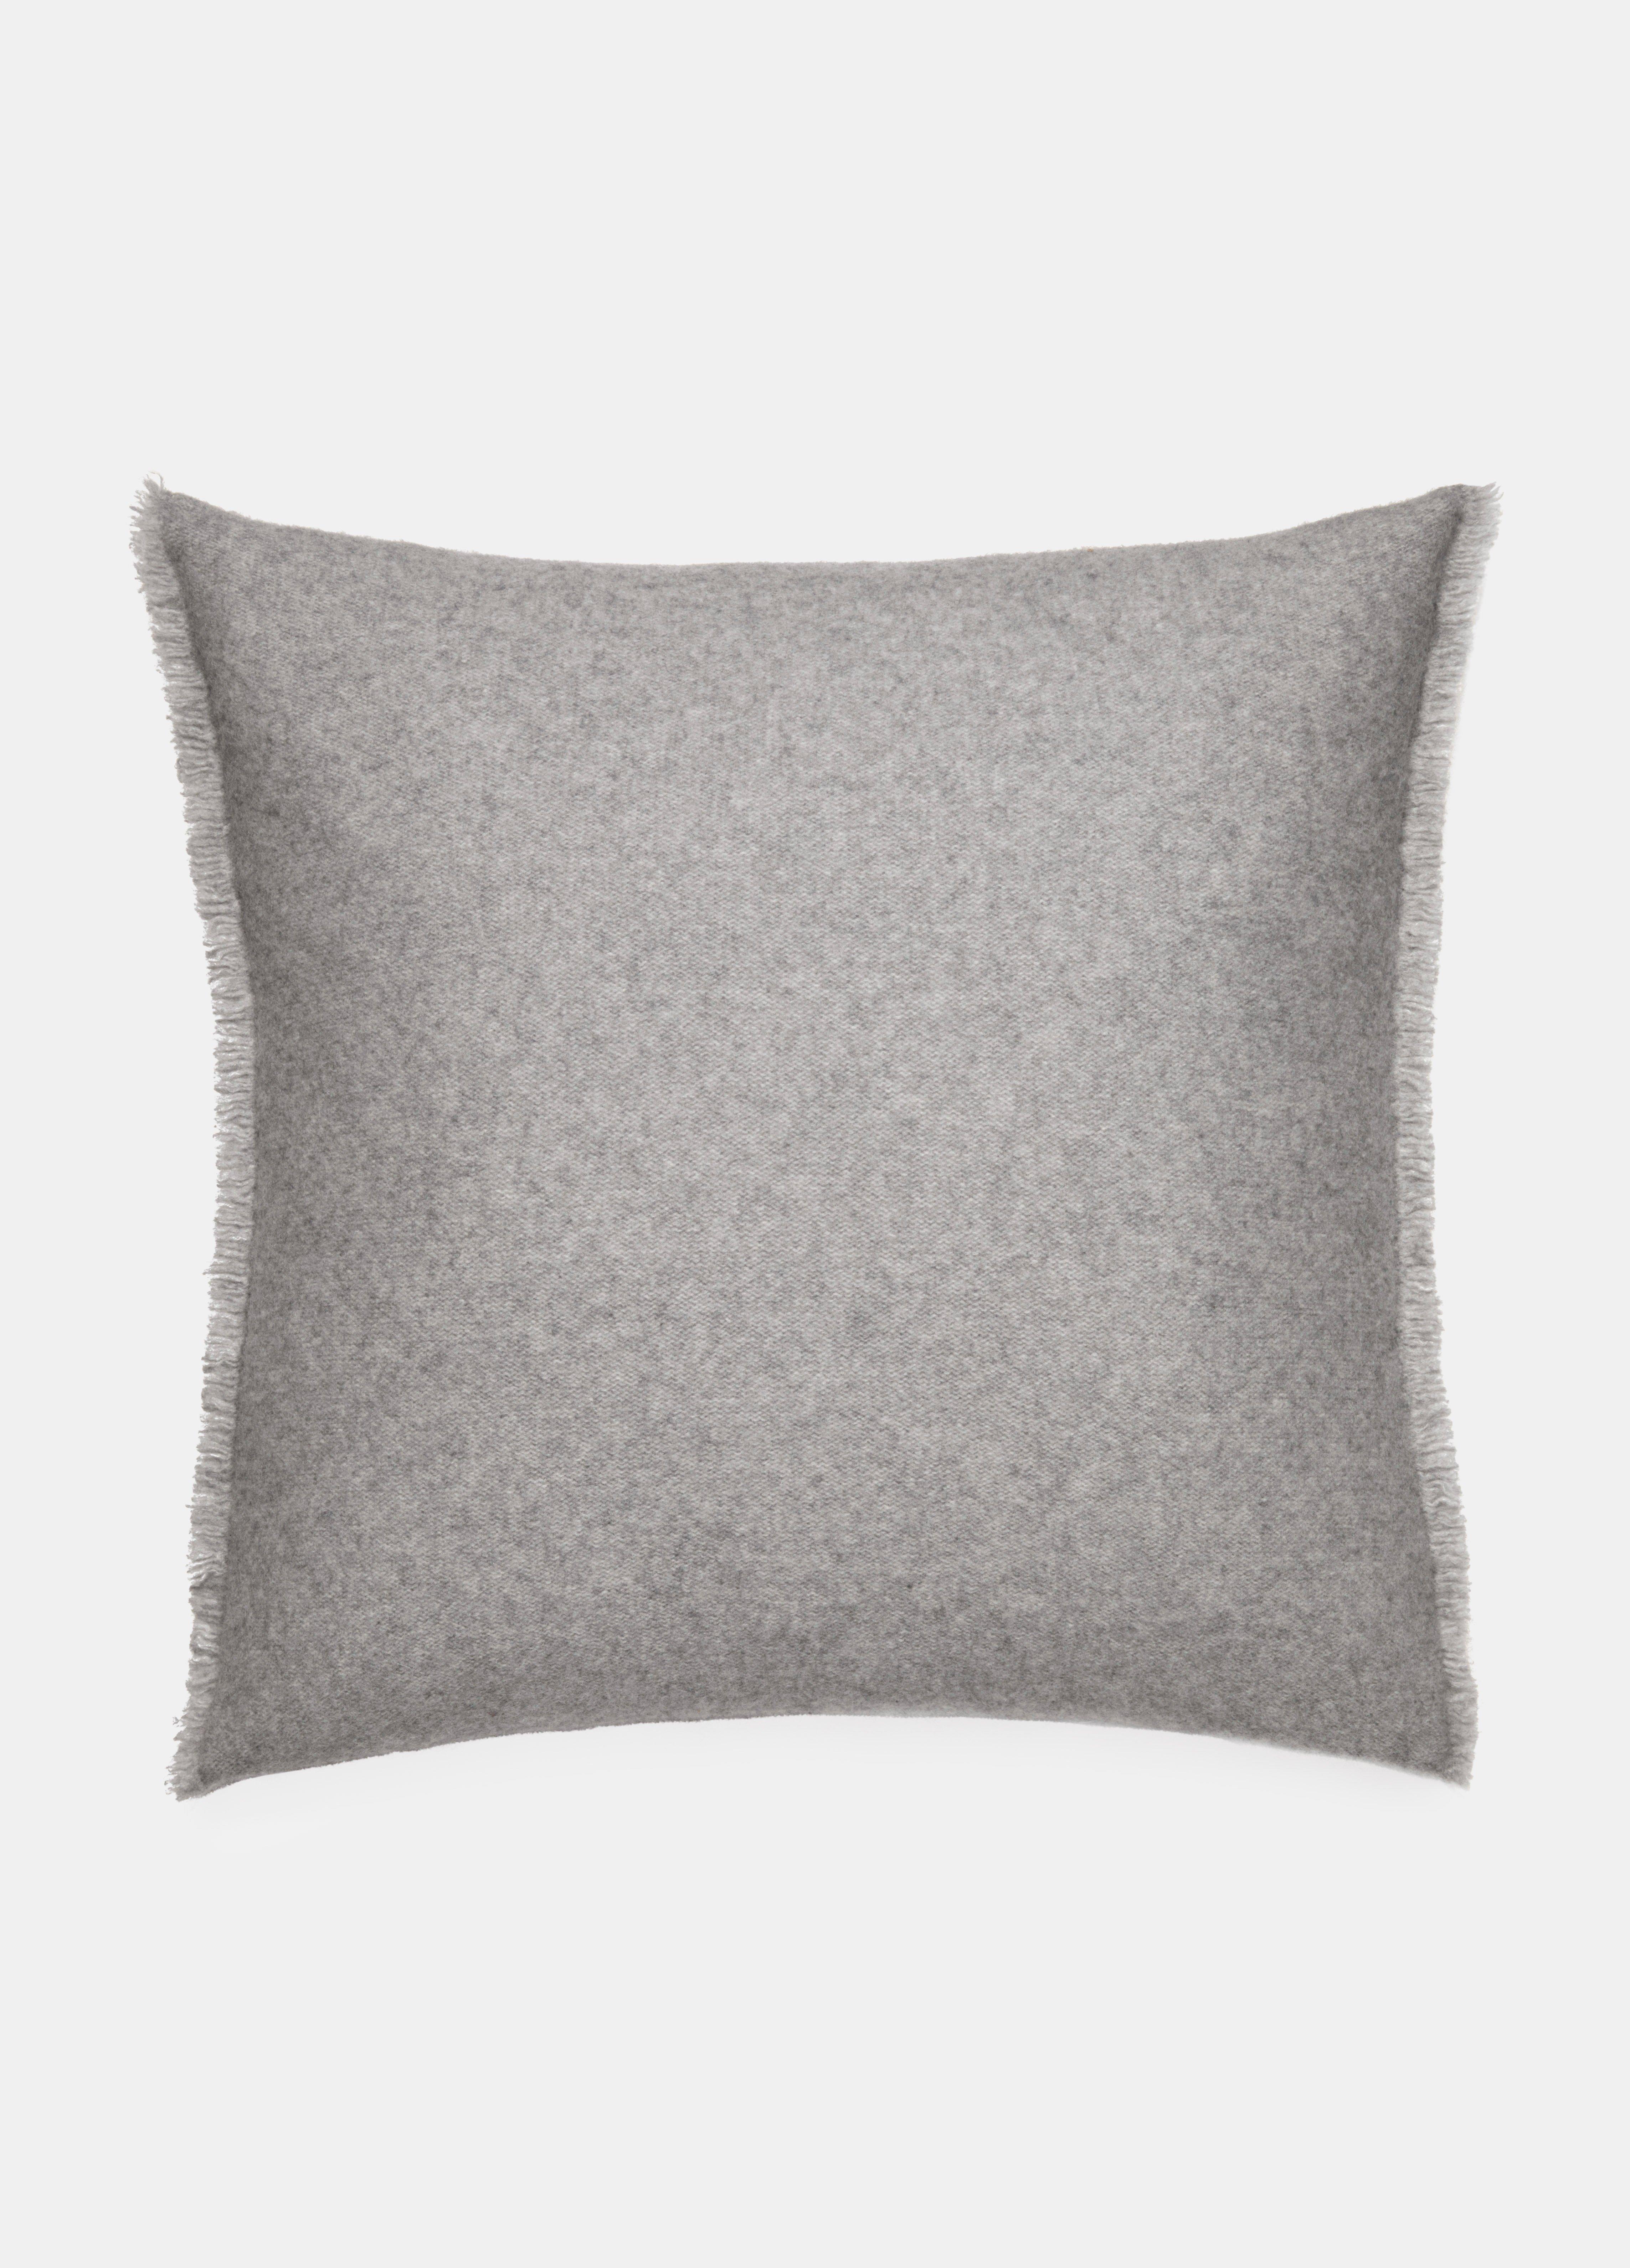 Plush Cashmere Square Pillow